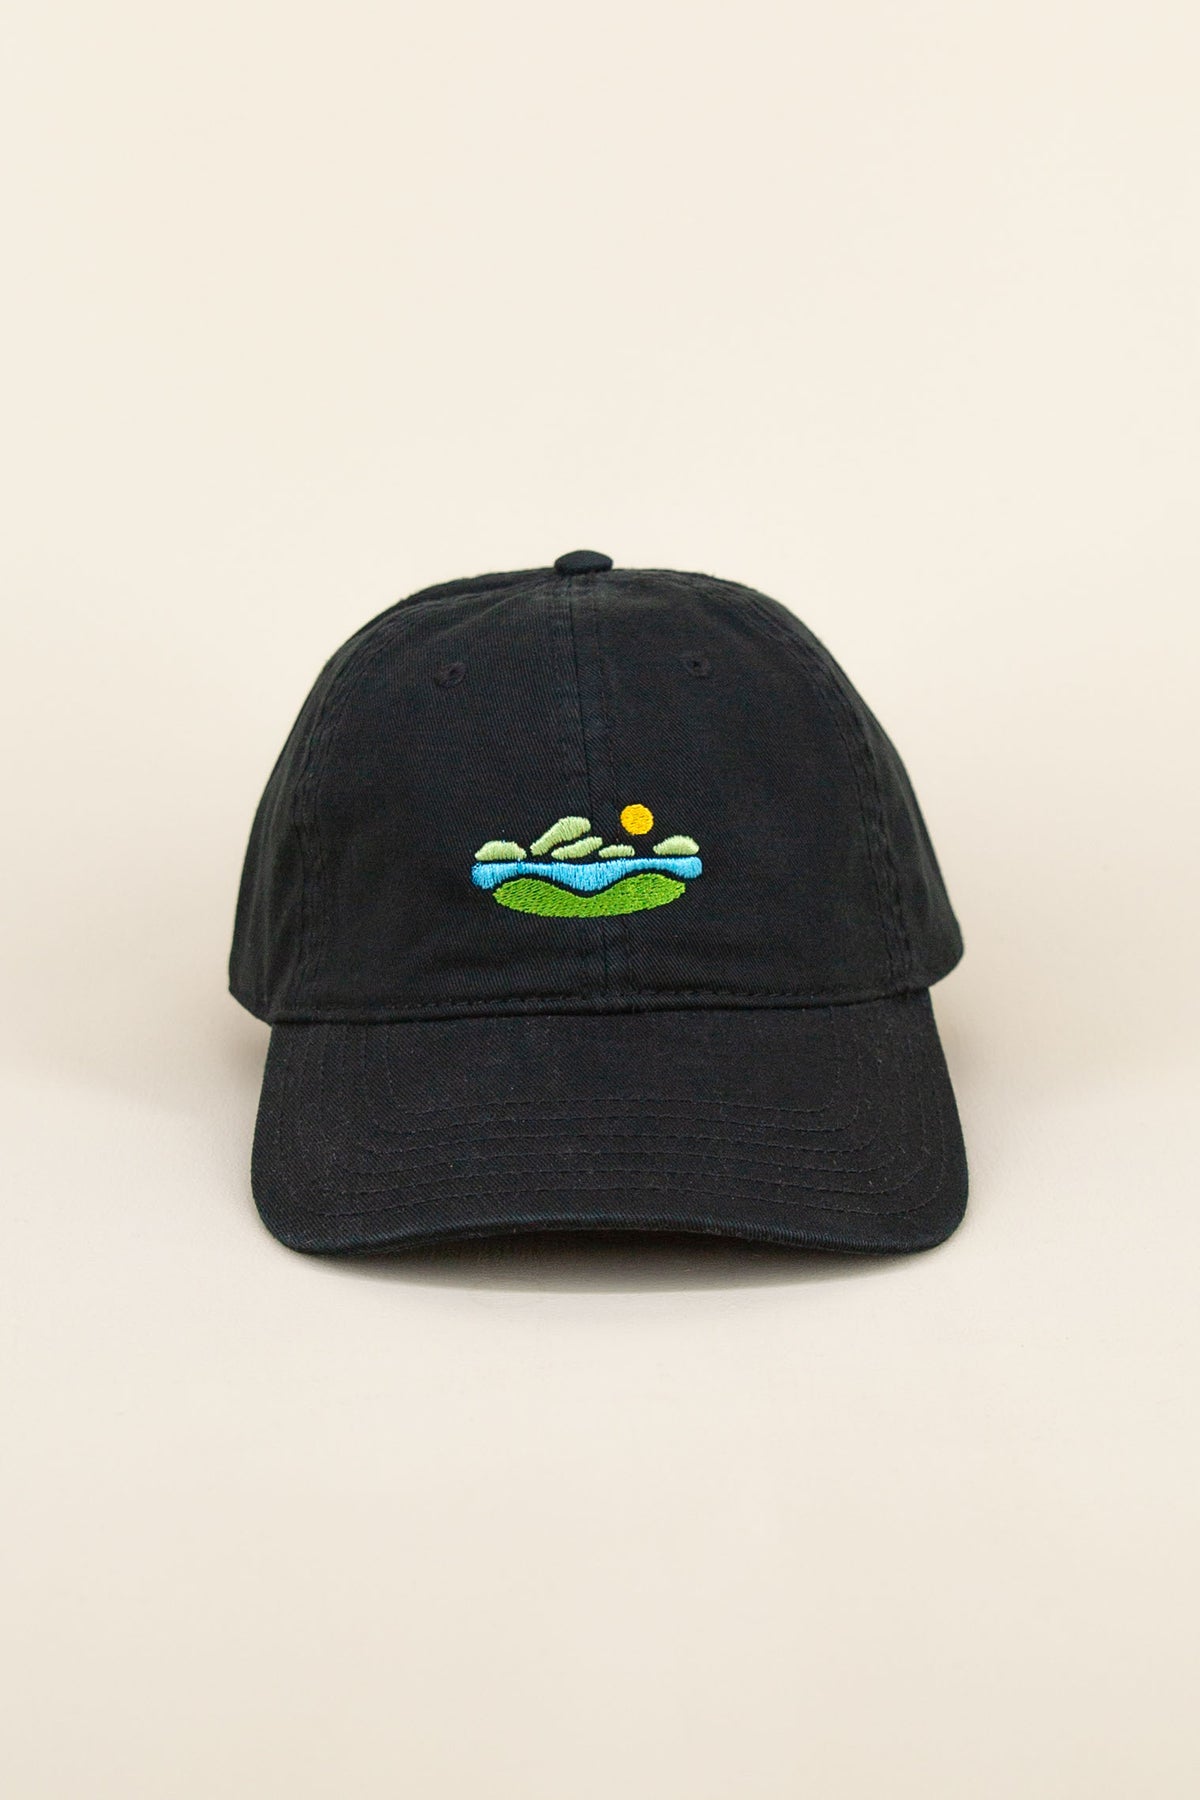 swimmin hole hat, final sale